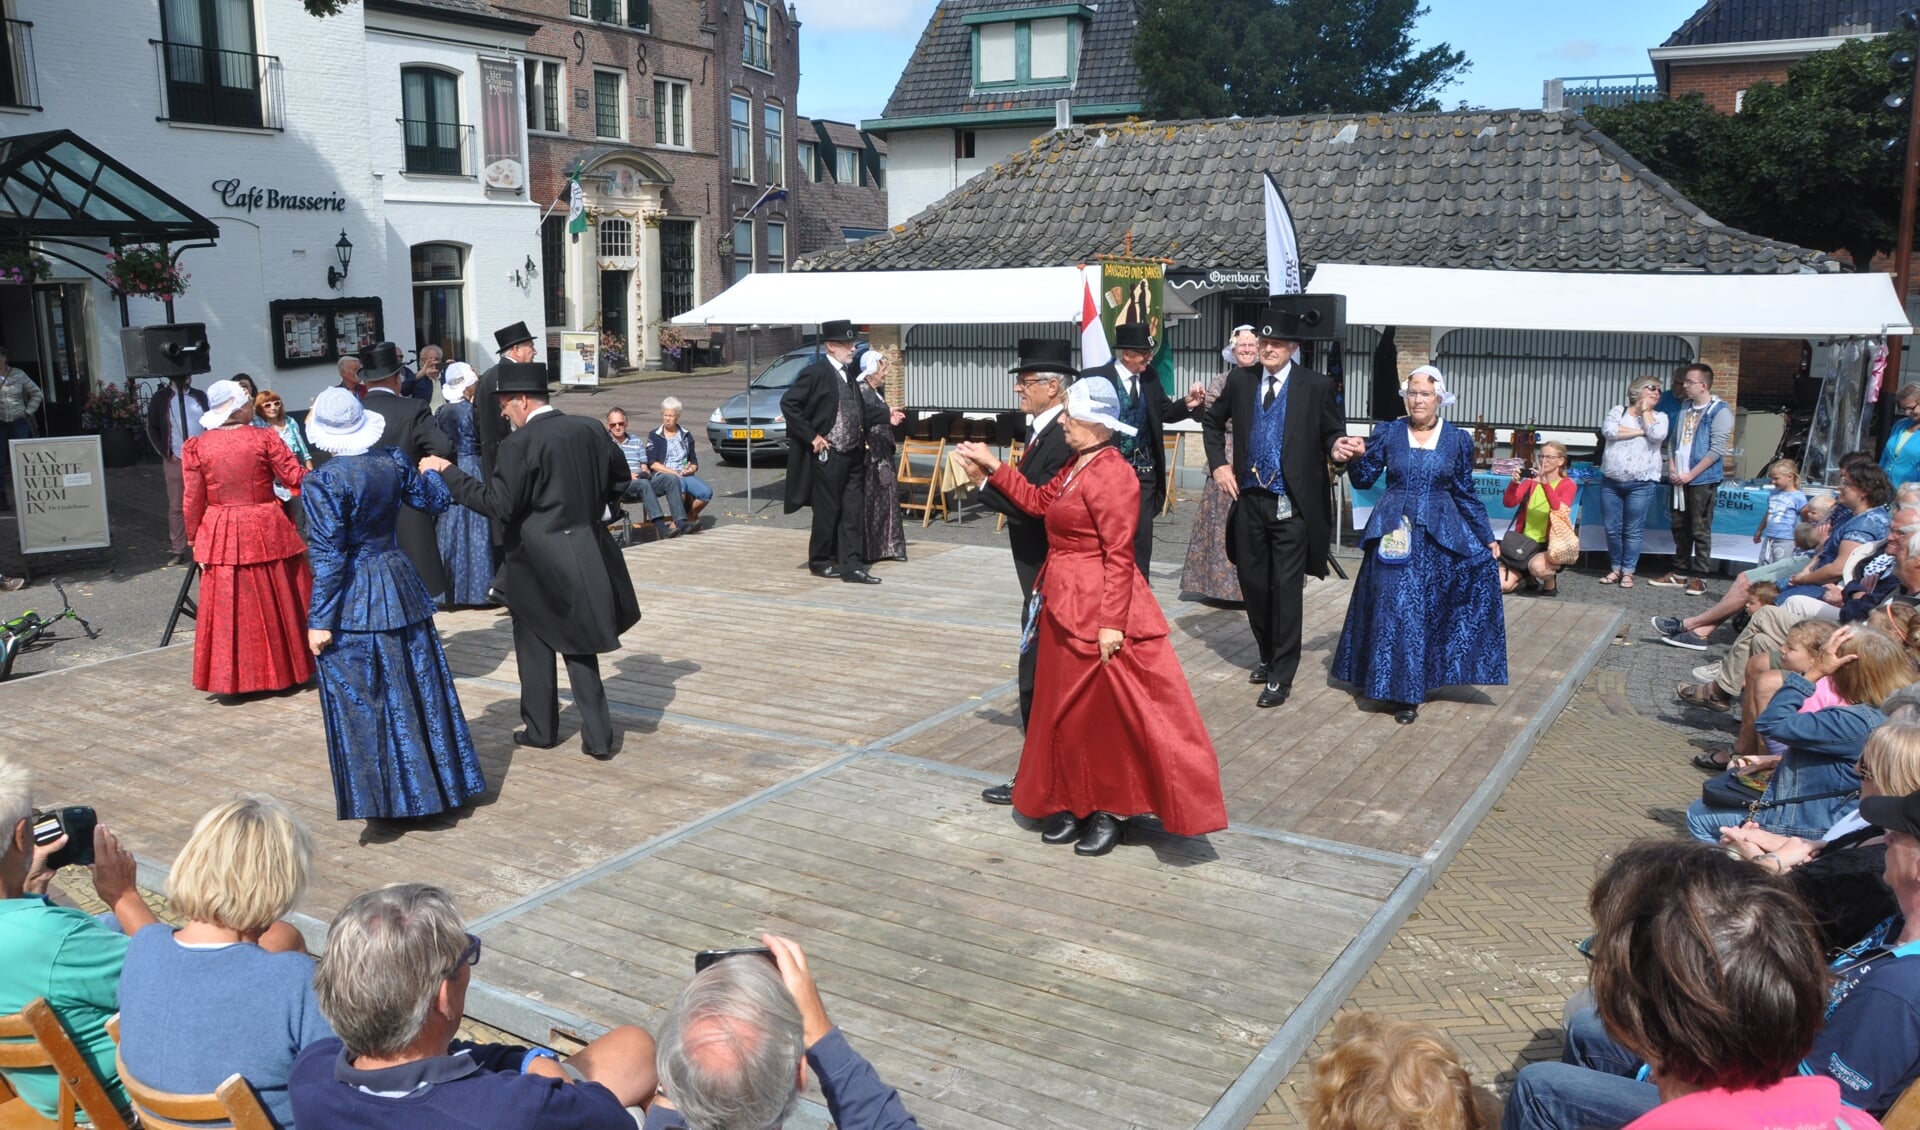 Oude dansen in het centrum van Den Burg.